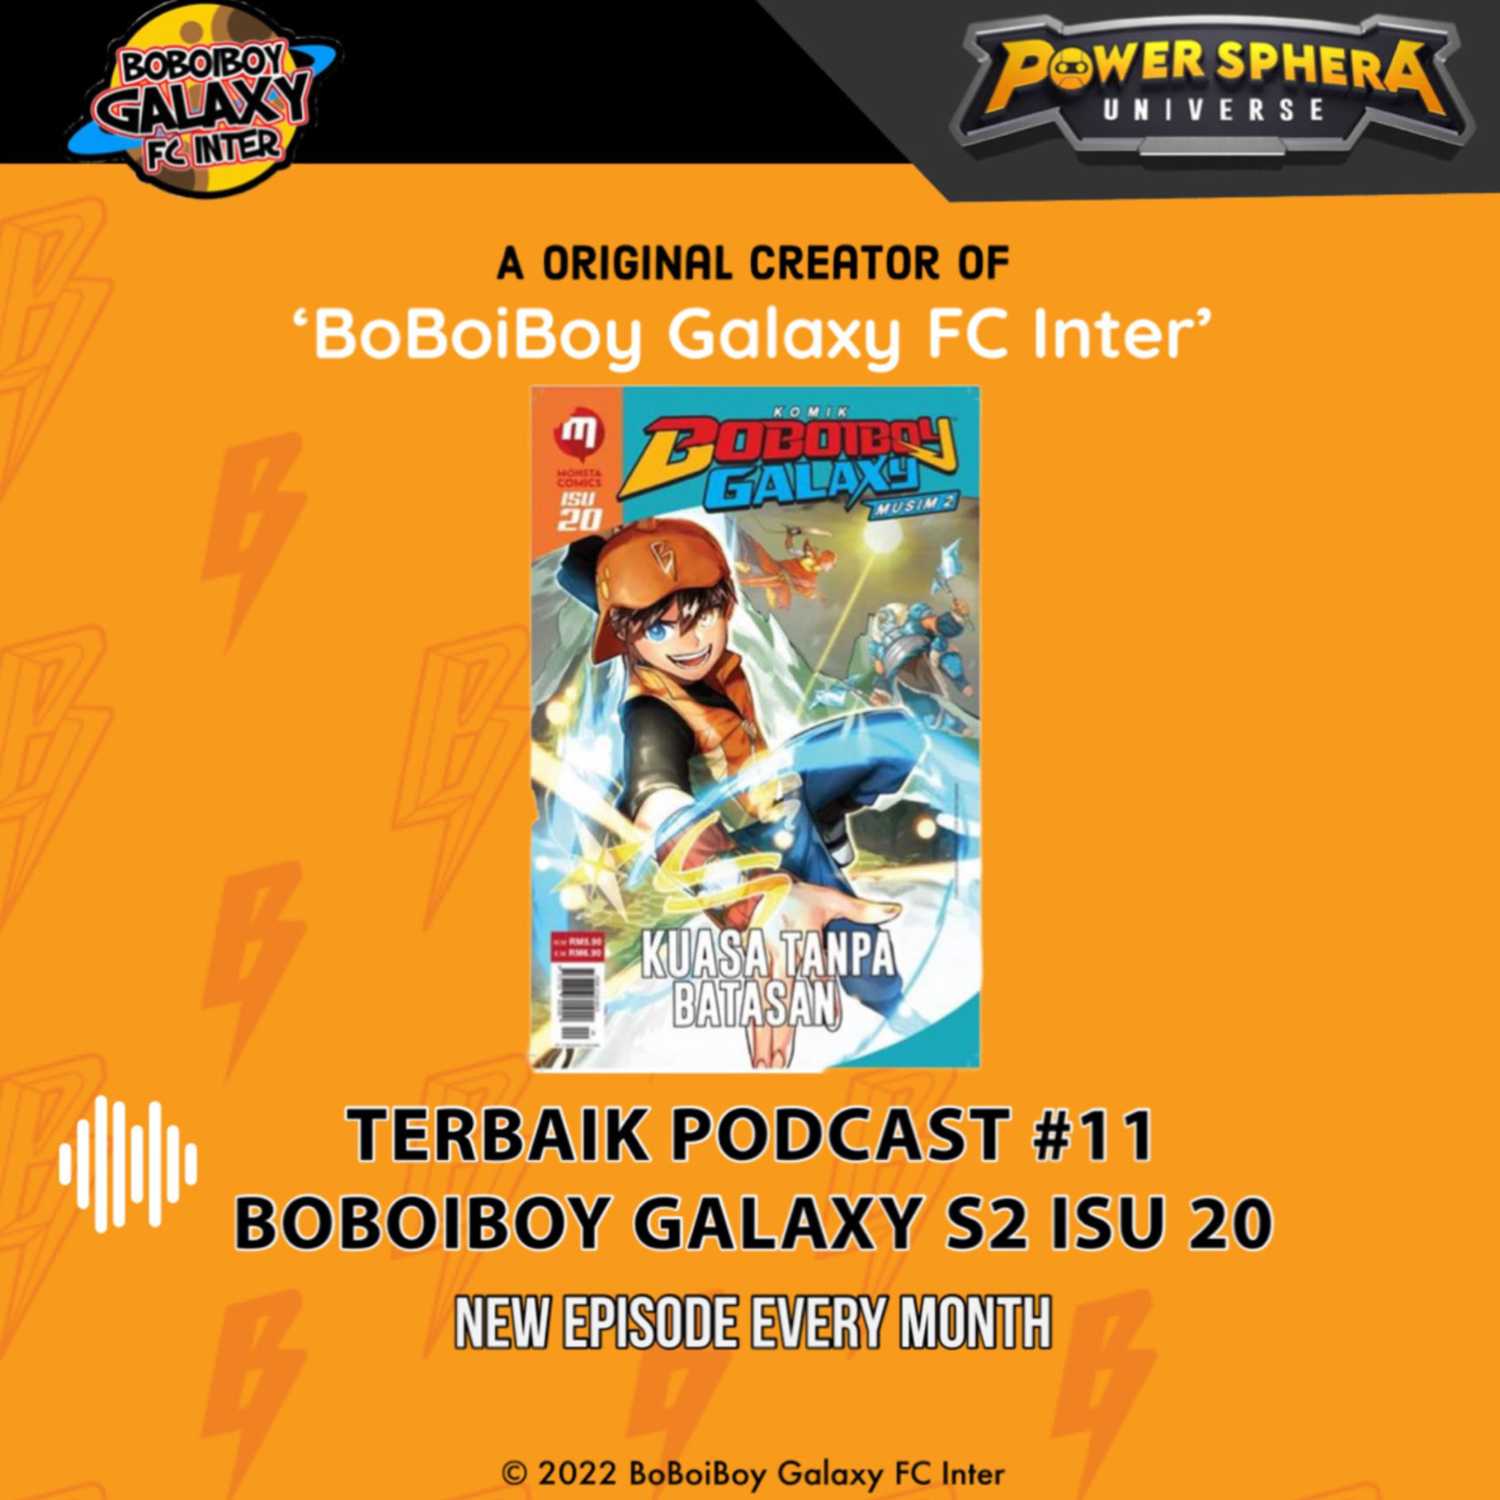 Terbaik Podcast #11 - BoBoiBoy Galaxy Season 2 Isu 20 Spoiler